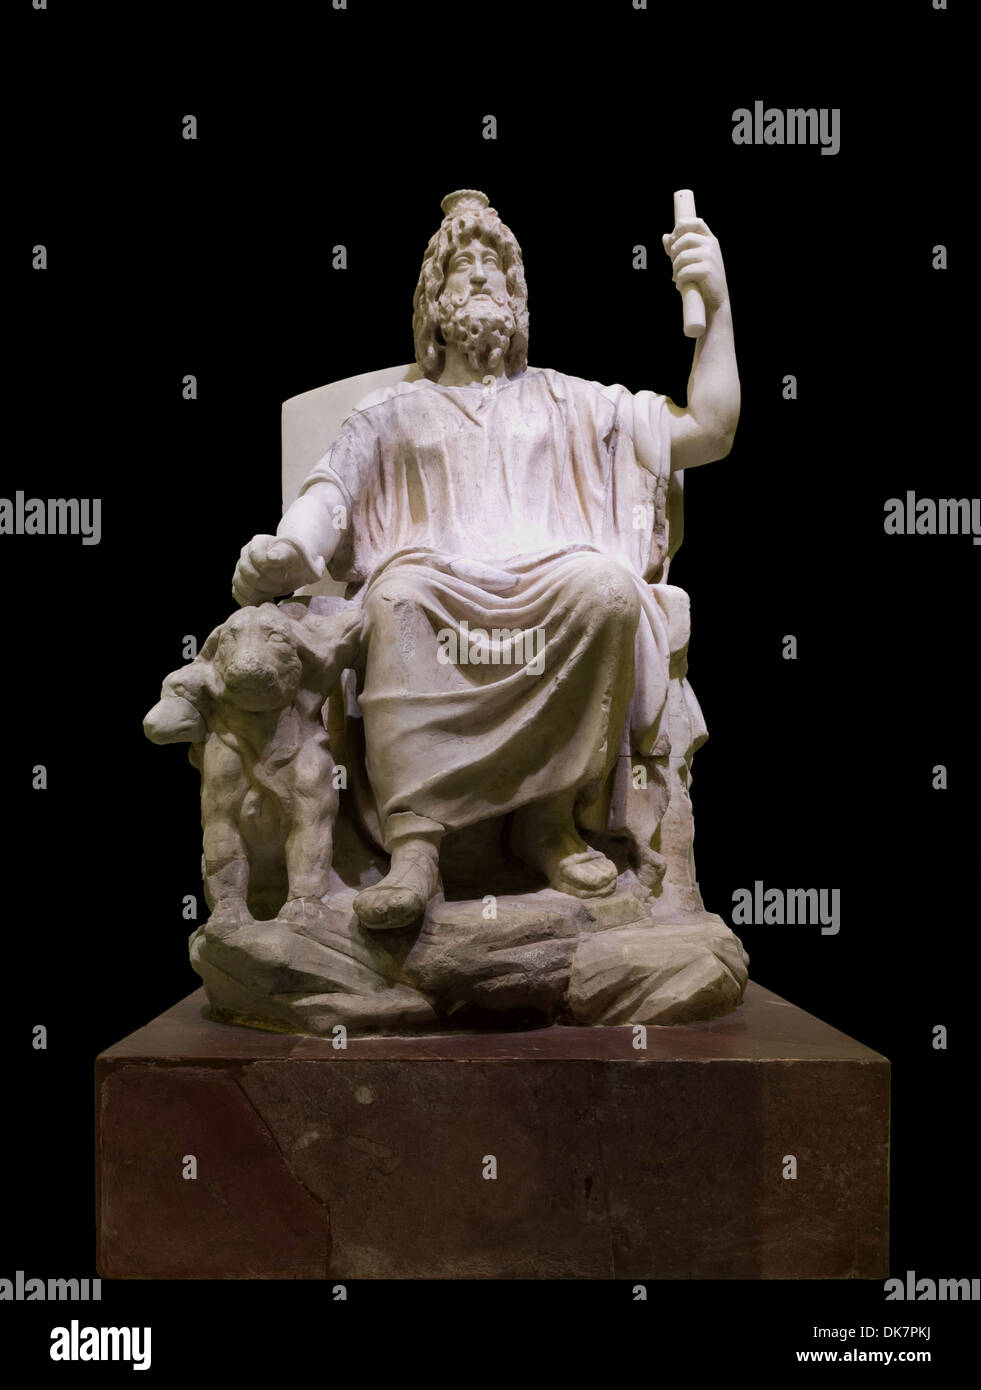 Estatuilla de mármol de Serapis, siglo iv, Musei Vaticani, exposición temporal en el Coliseo, Roma, Italia. Foto de stock